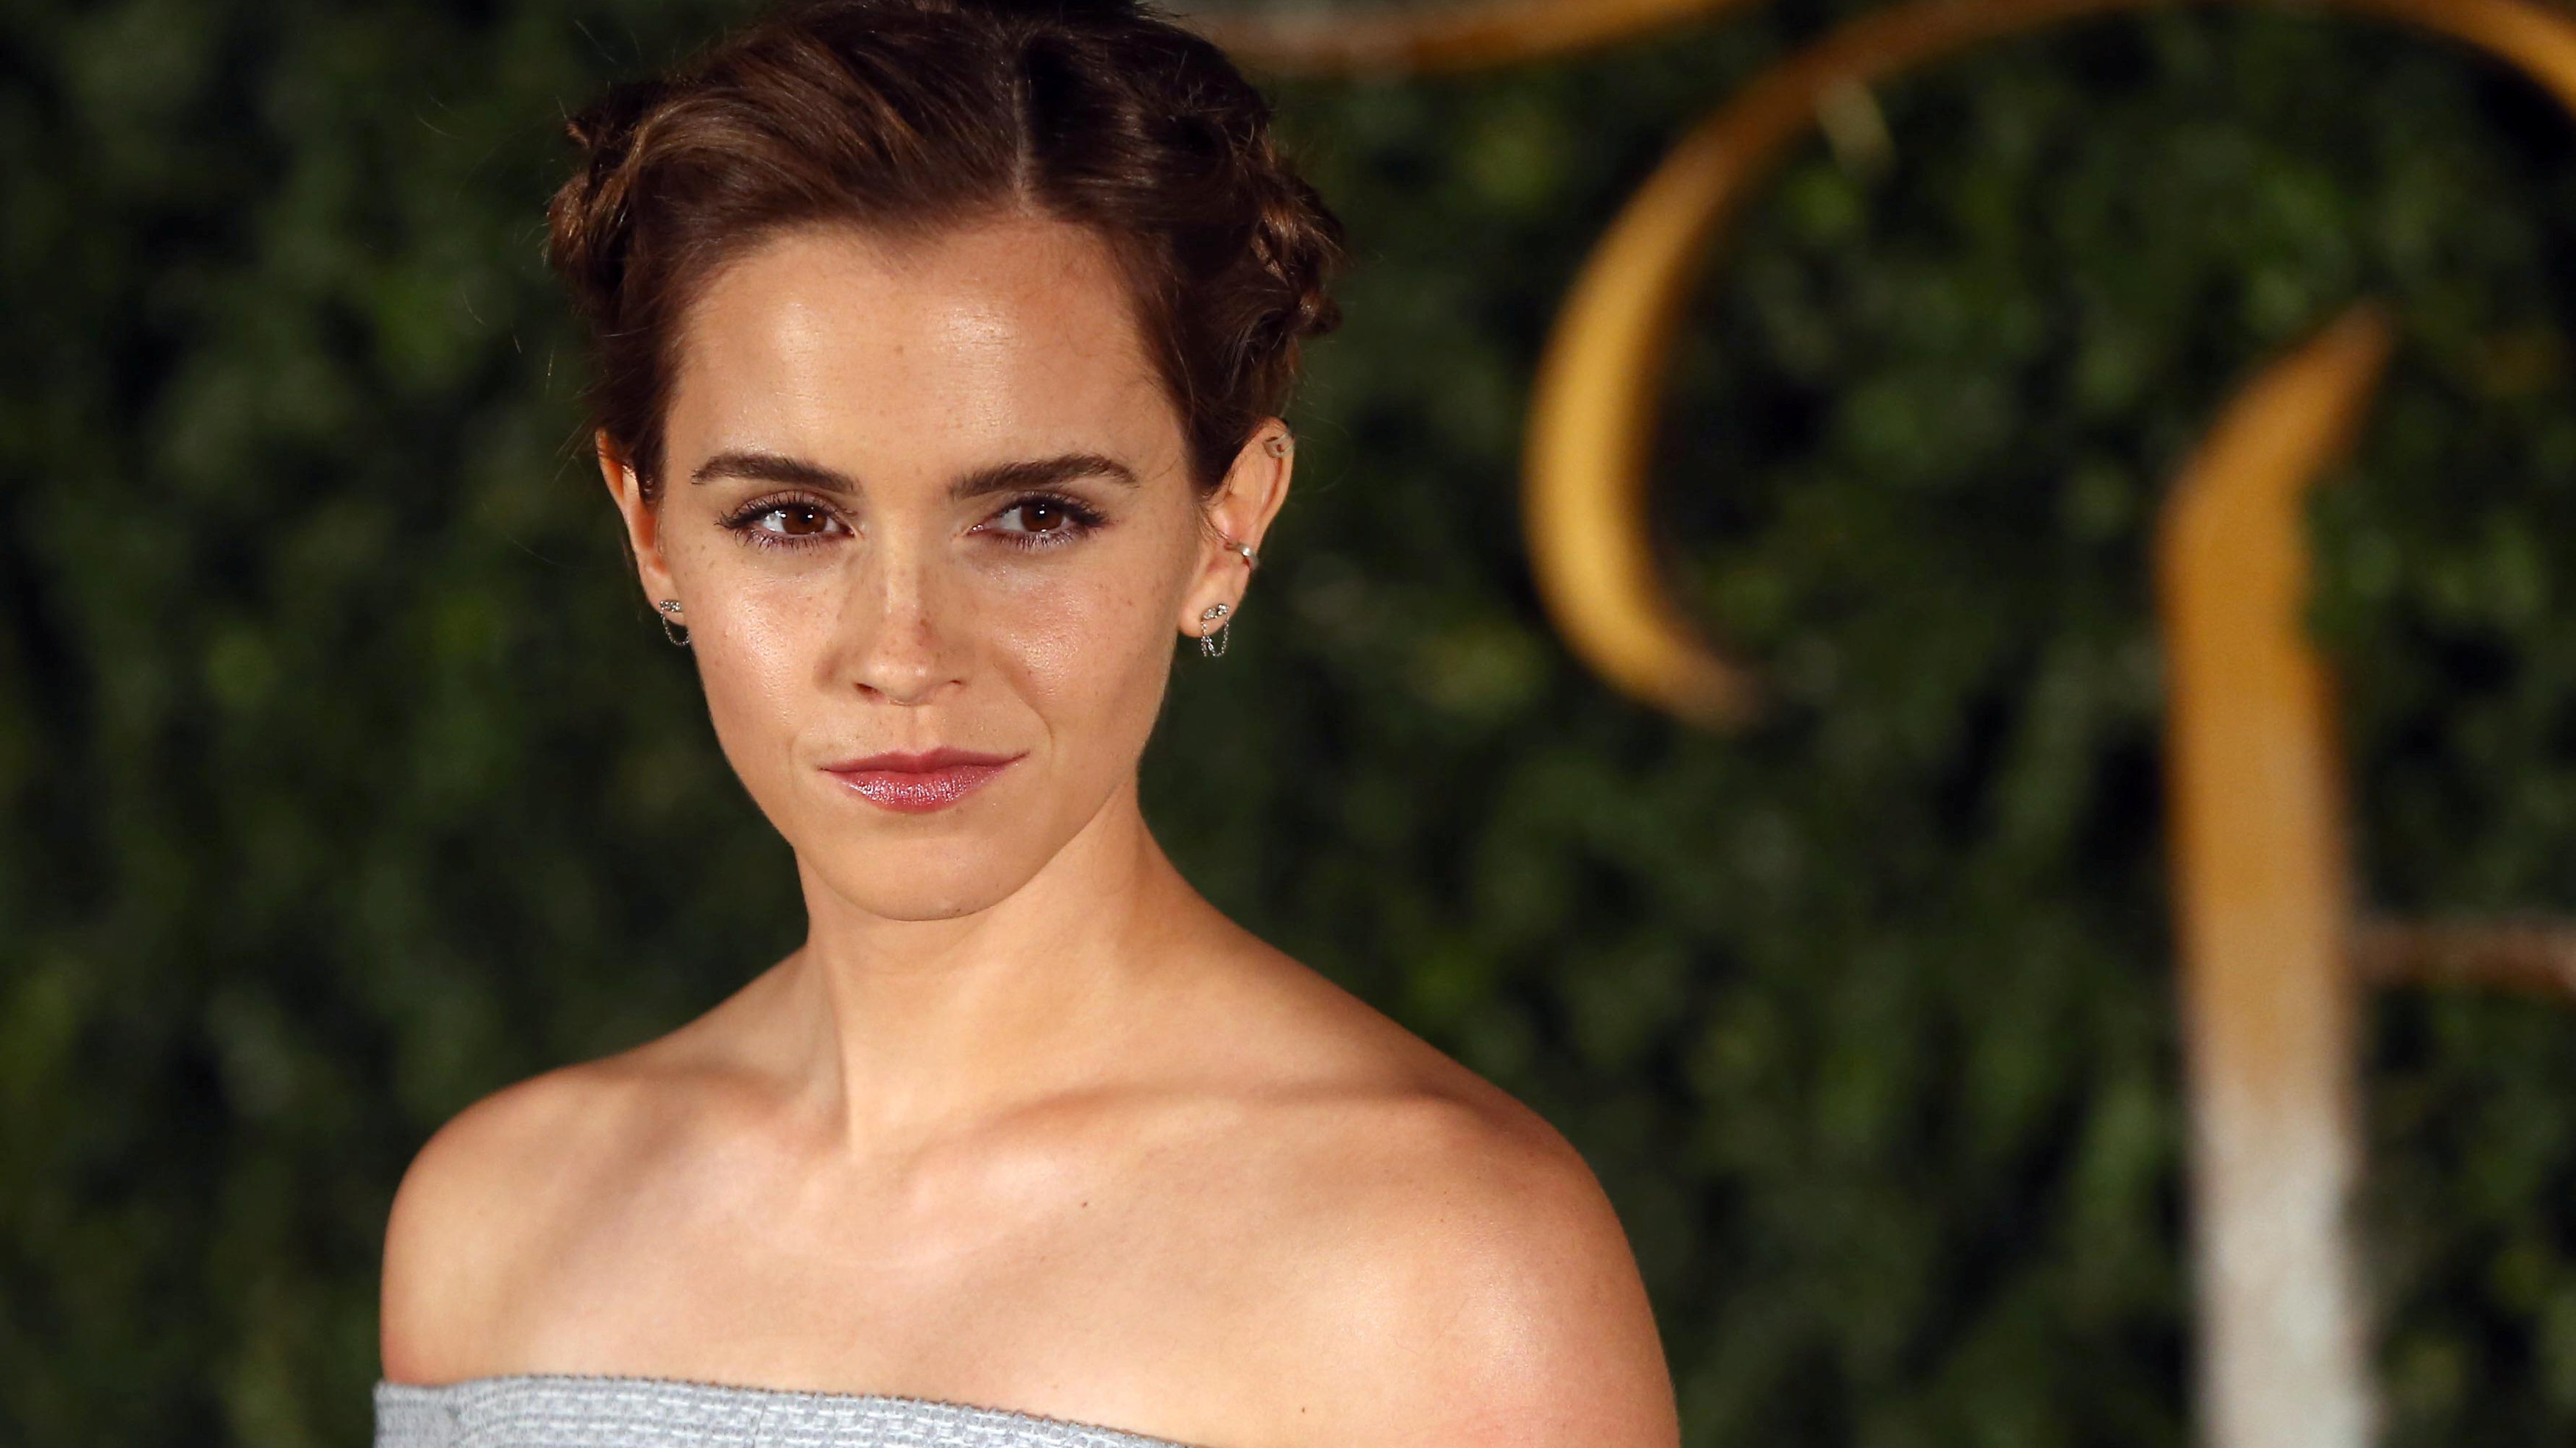 Película se estrenará en 2019: Emma Watson es fotografiada interpretando a una de las hermanas March en "Mujercitas"